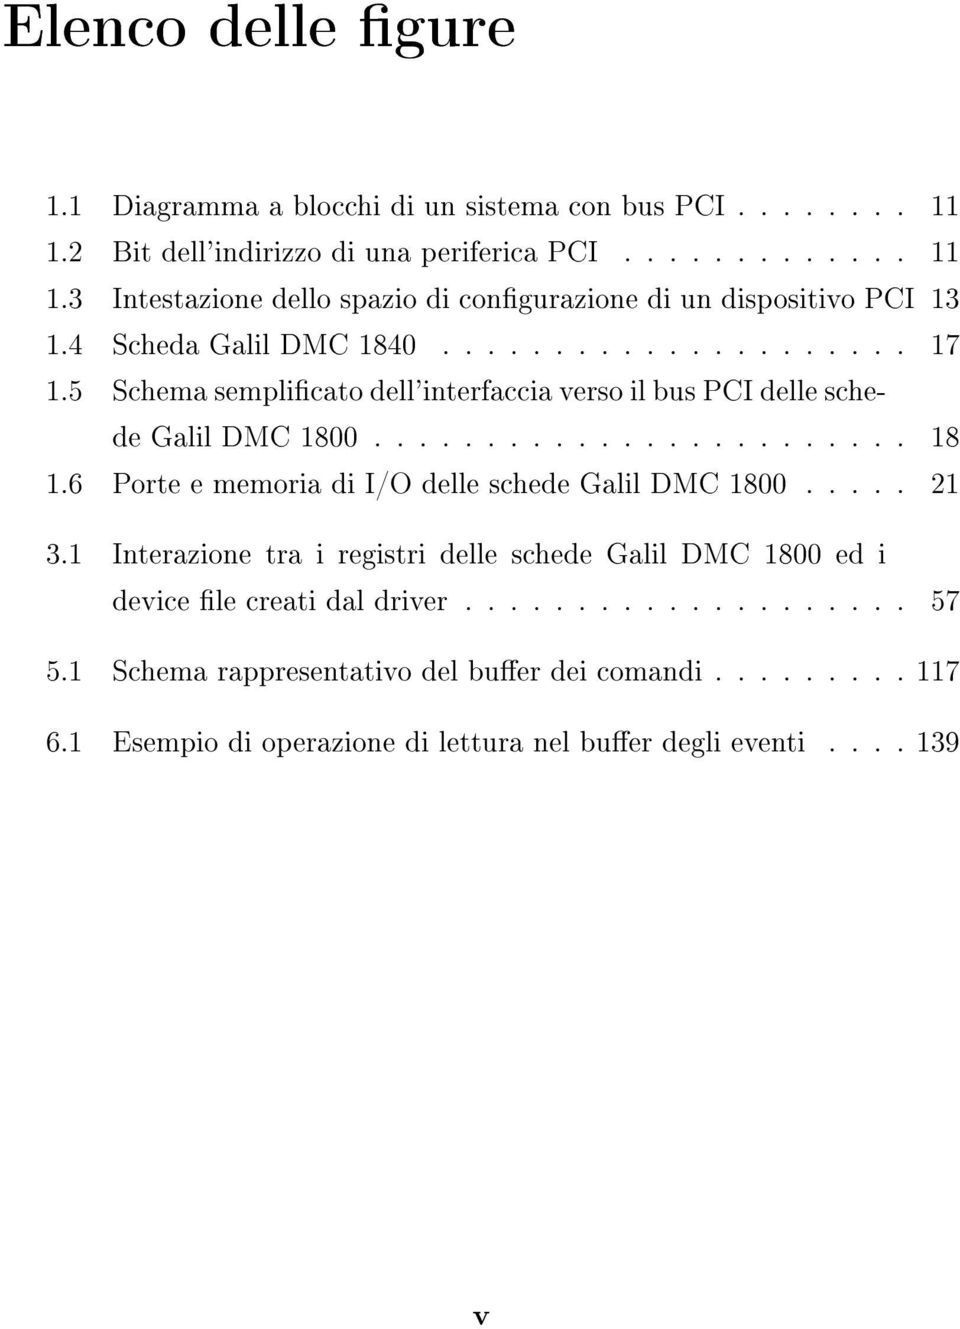 6 Porte e memoria di I/O delle schede Galil DMC 1800..... 21 3.1 Interazione tra i registri delle schede Galil DMC 1800 ed i device le creati dal driver.................... 57 5.